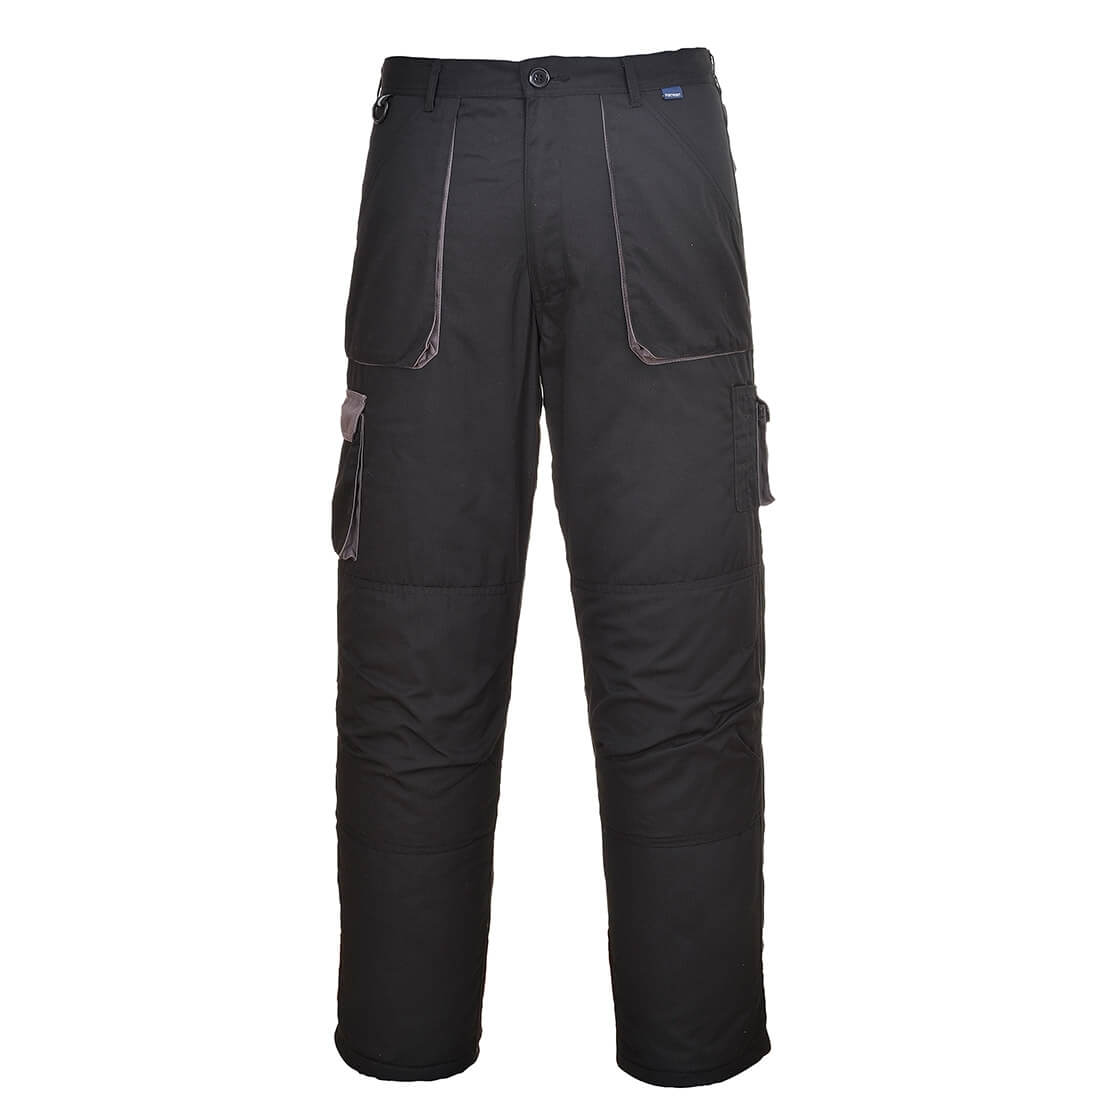 Pantalon Texo Contrast - Les vêtements de protection